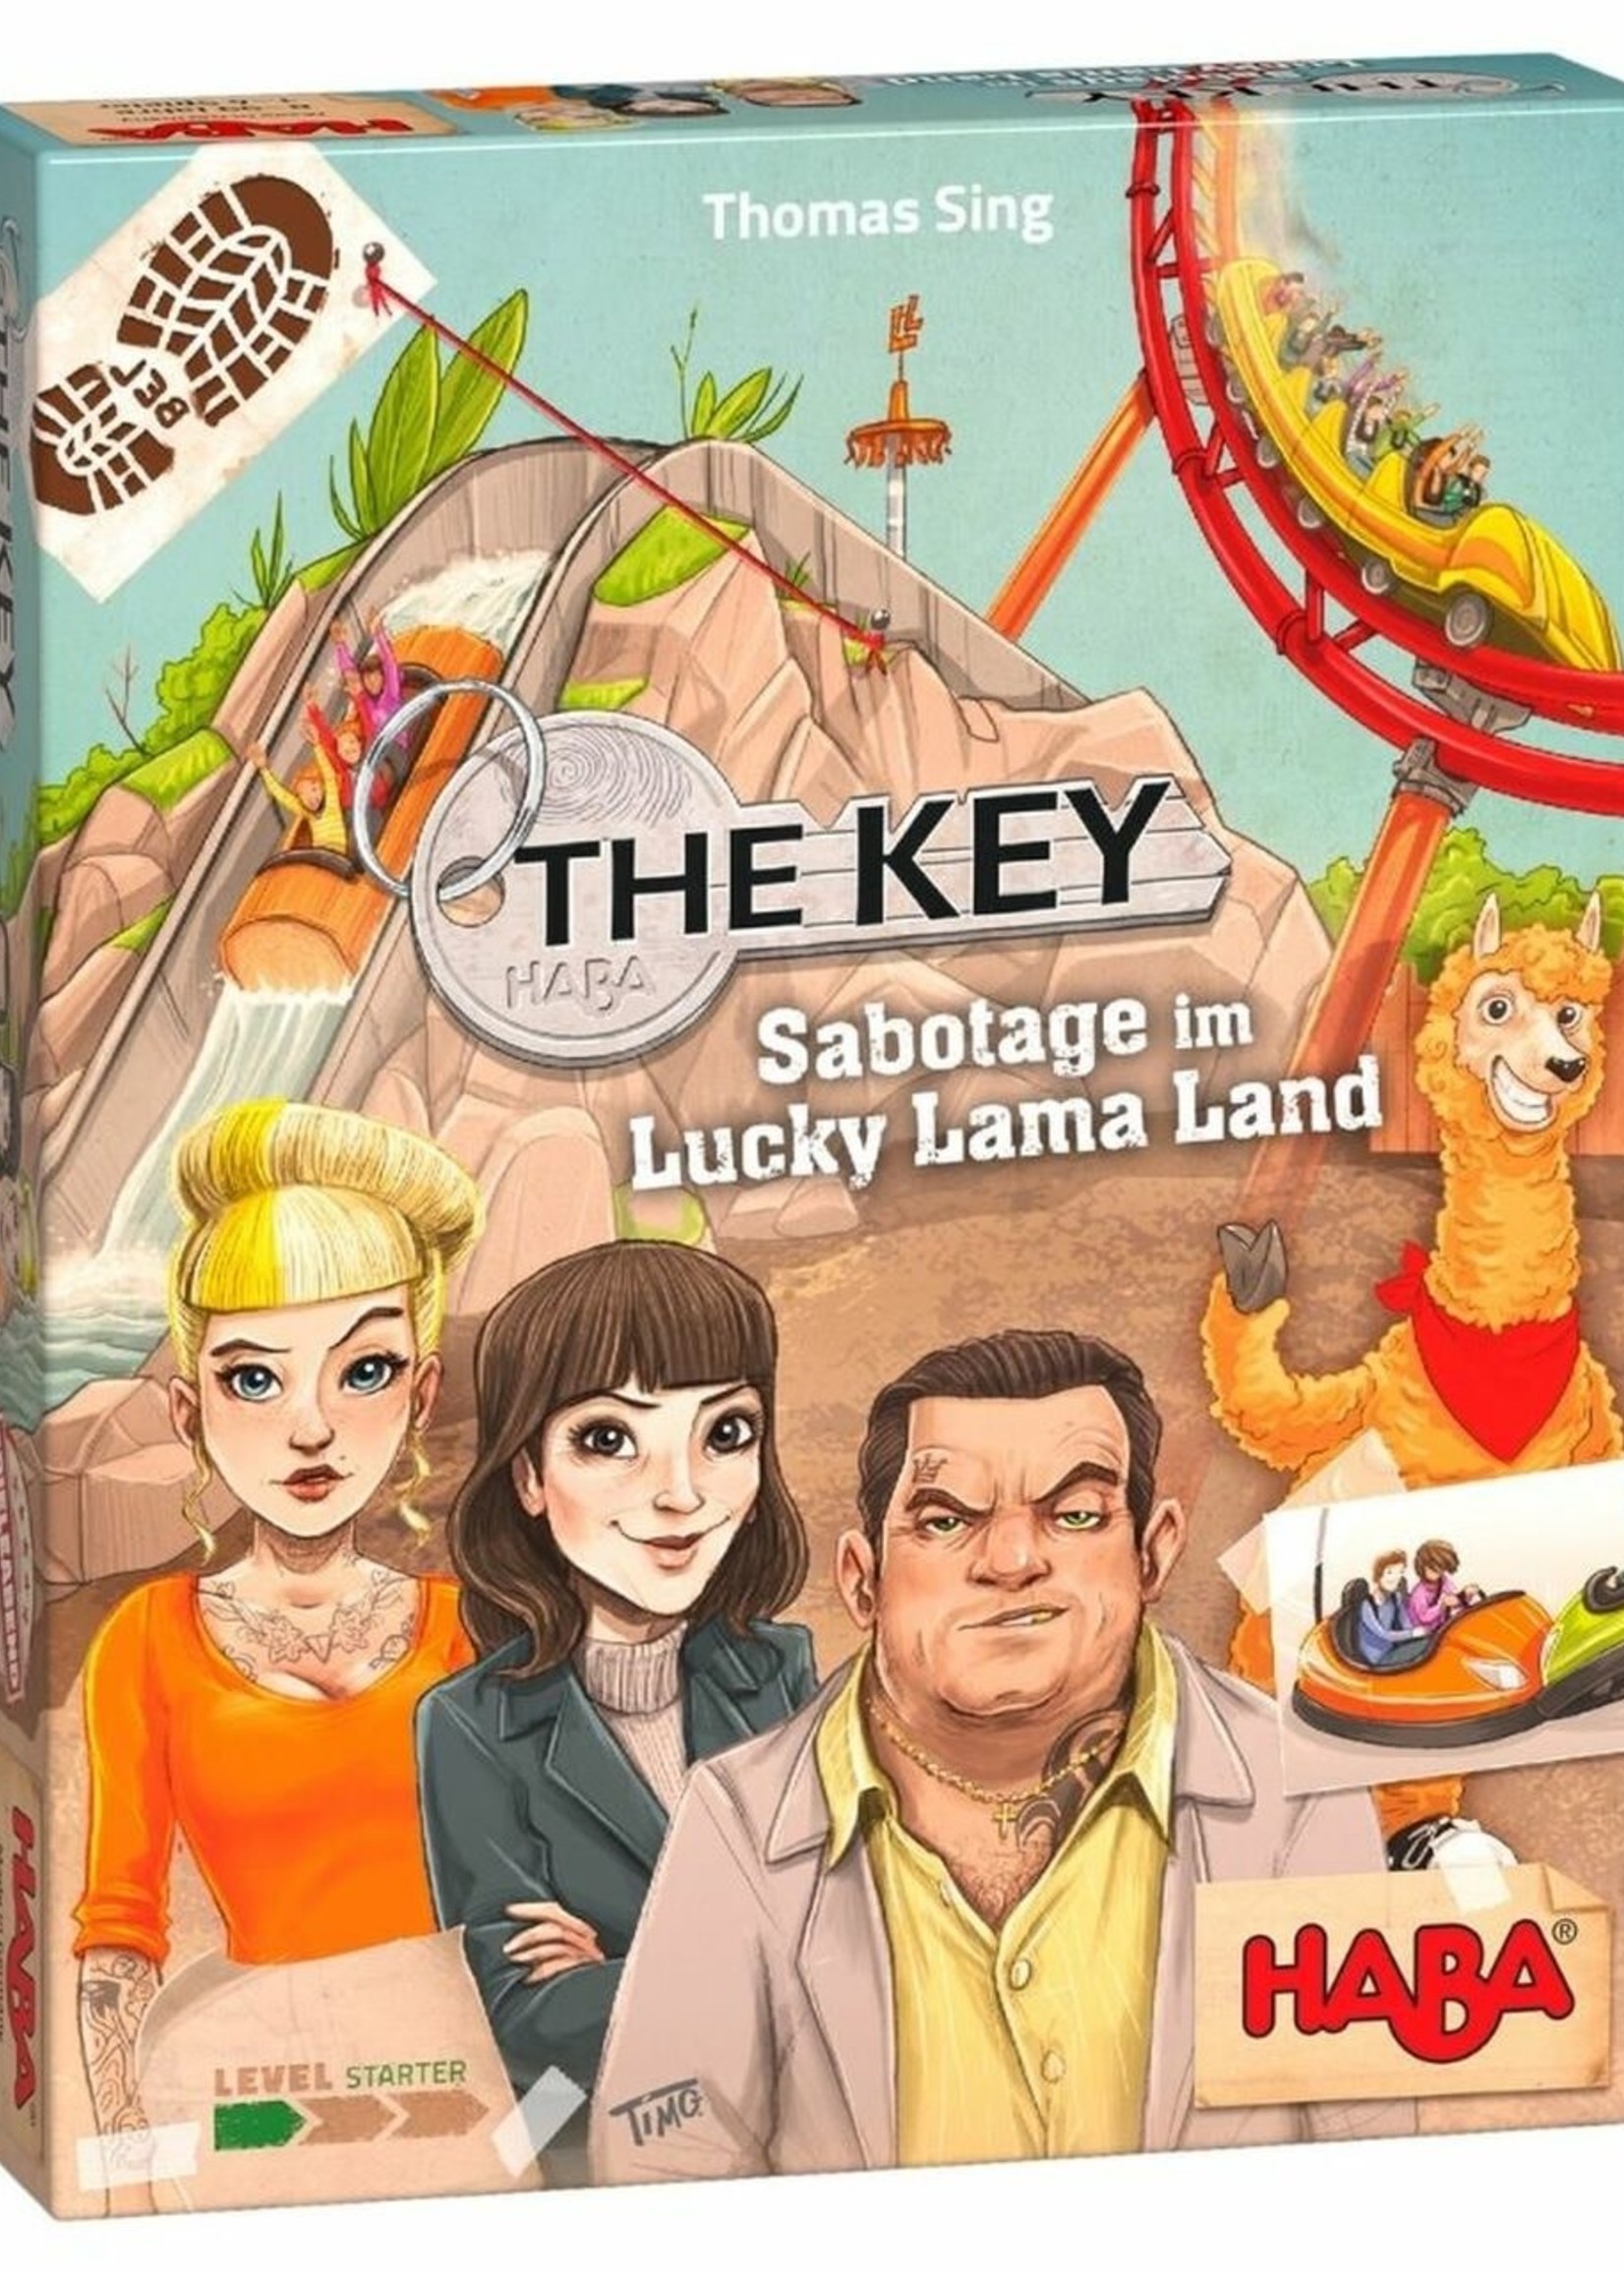 Haba The key - Sabotage at Lucky llama land (Bilingual)